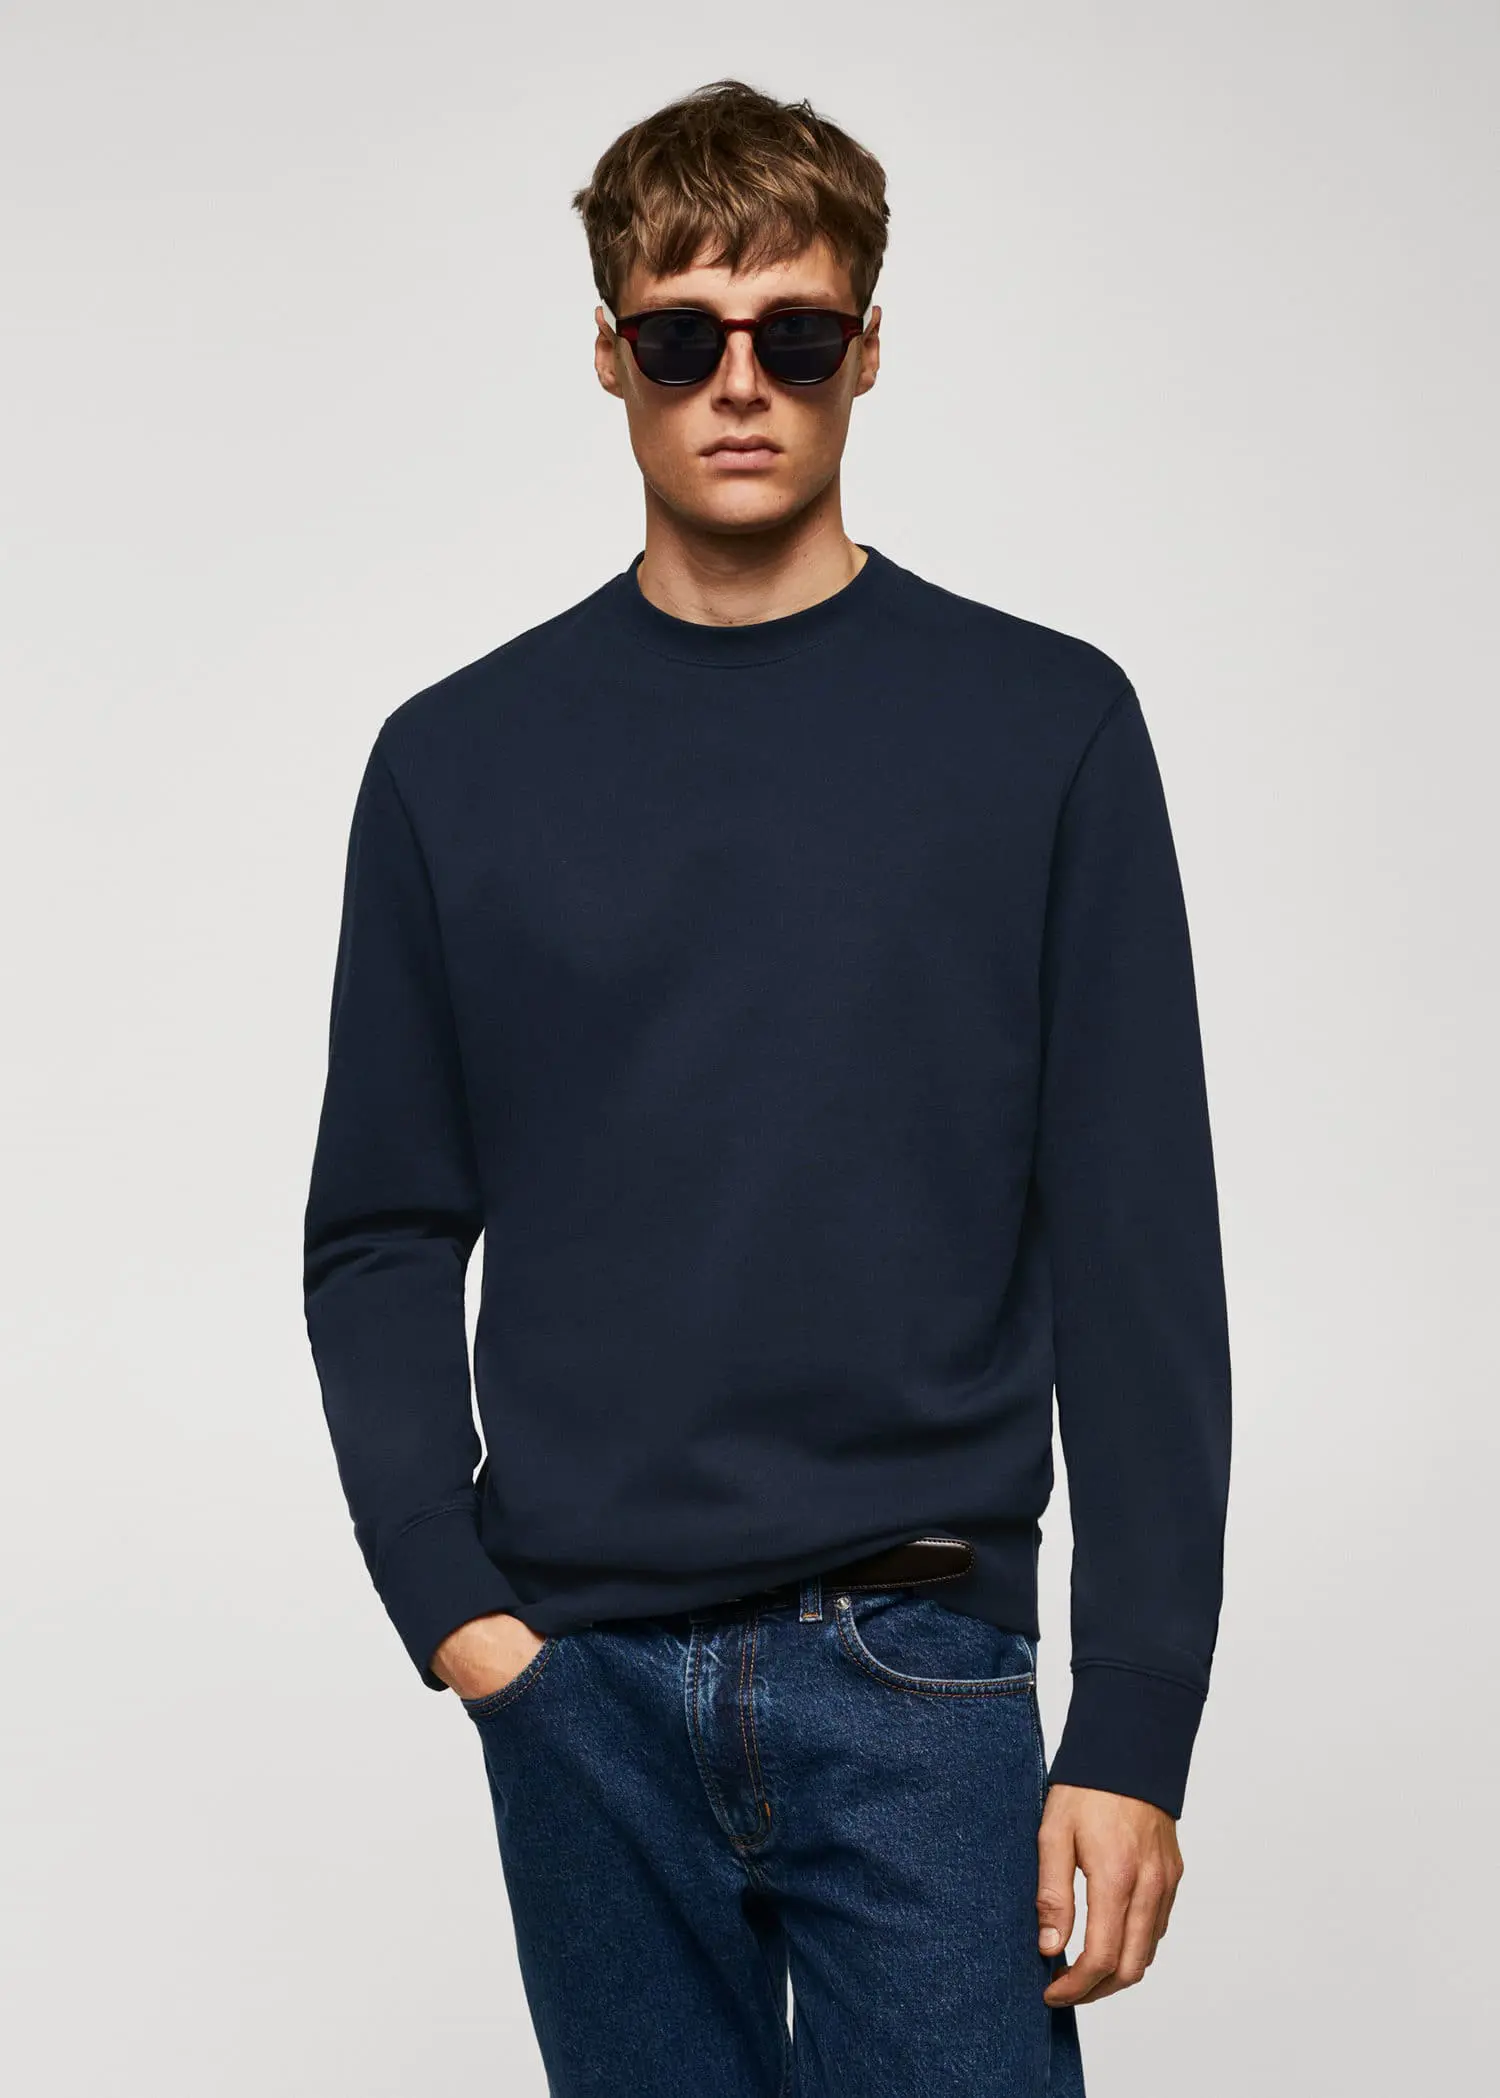 Mango 100% cotton basic sweatshirt . a man wearing sunglasses and a black sweater. 